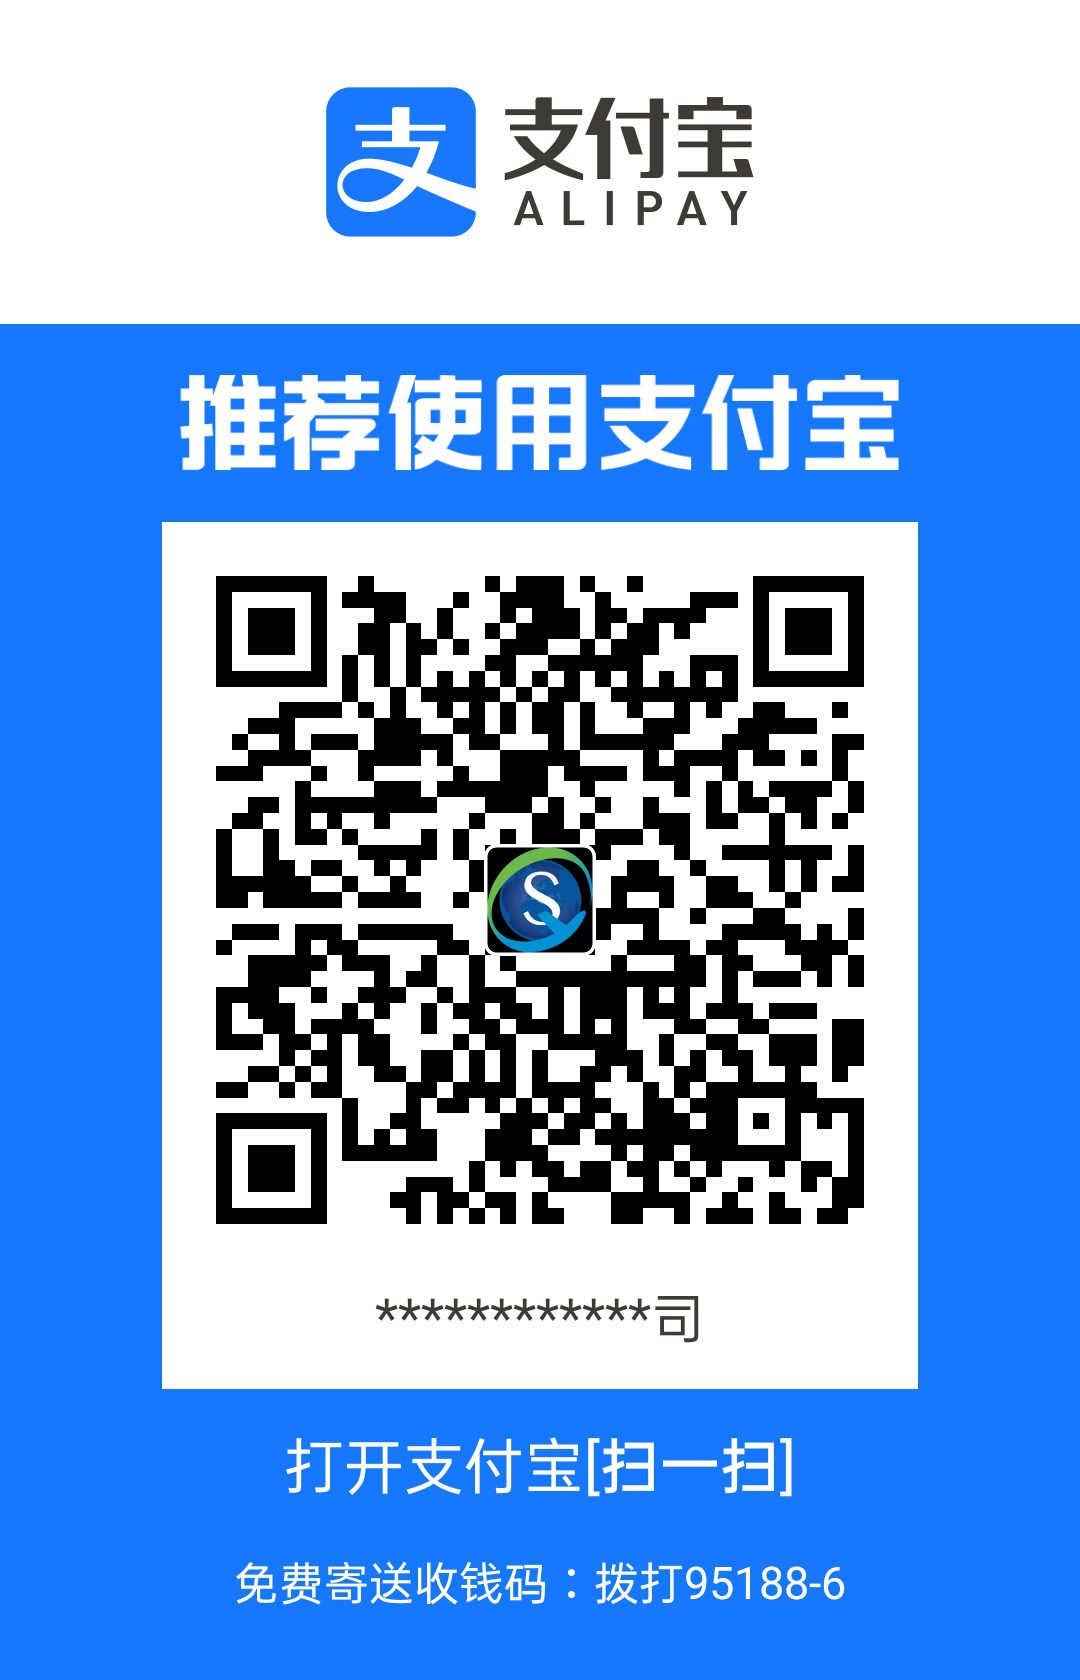 义乌市森焱网络科技棋牌开发公司